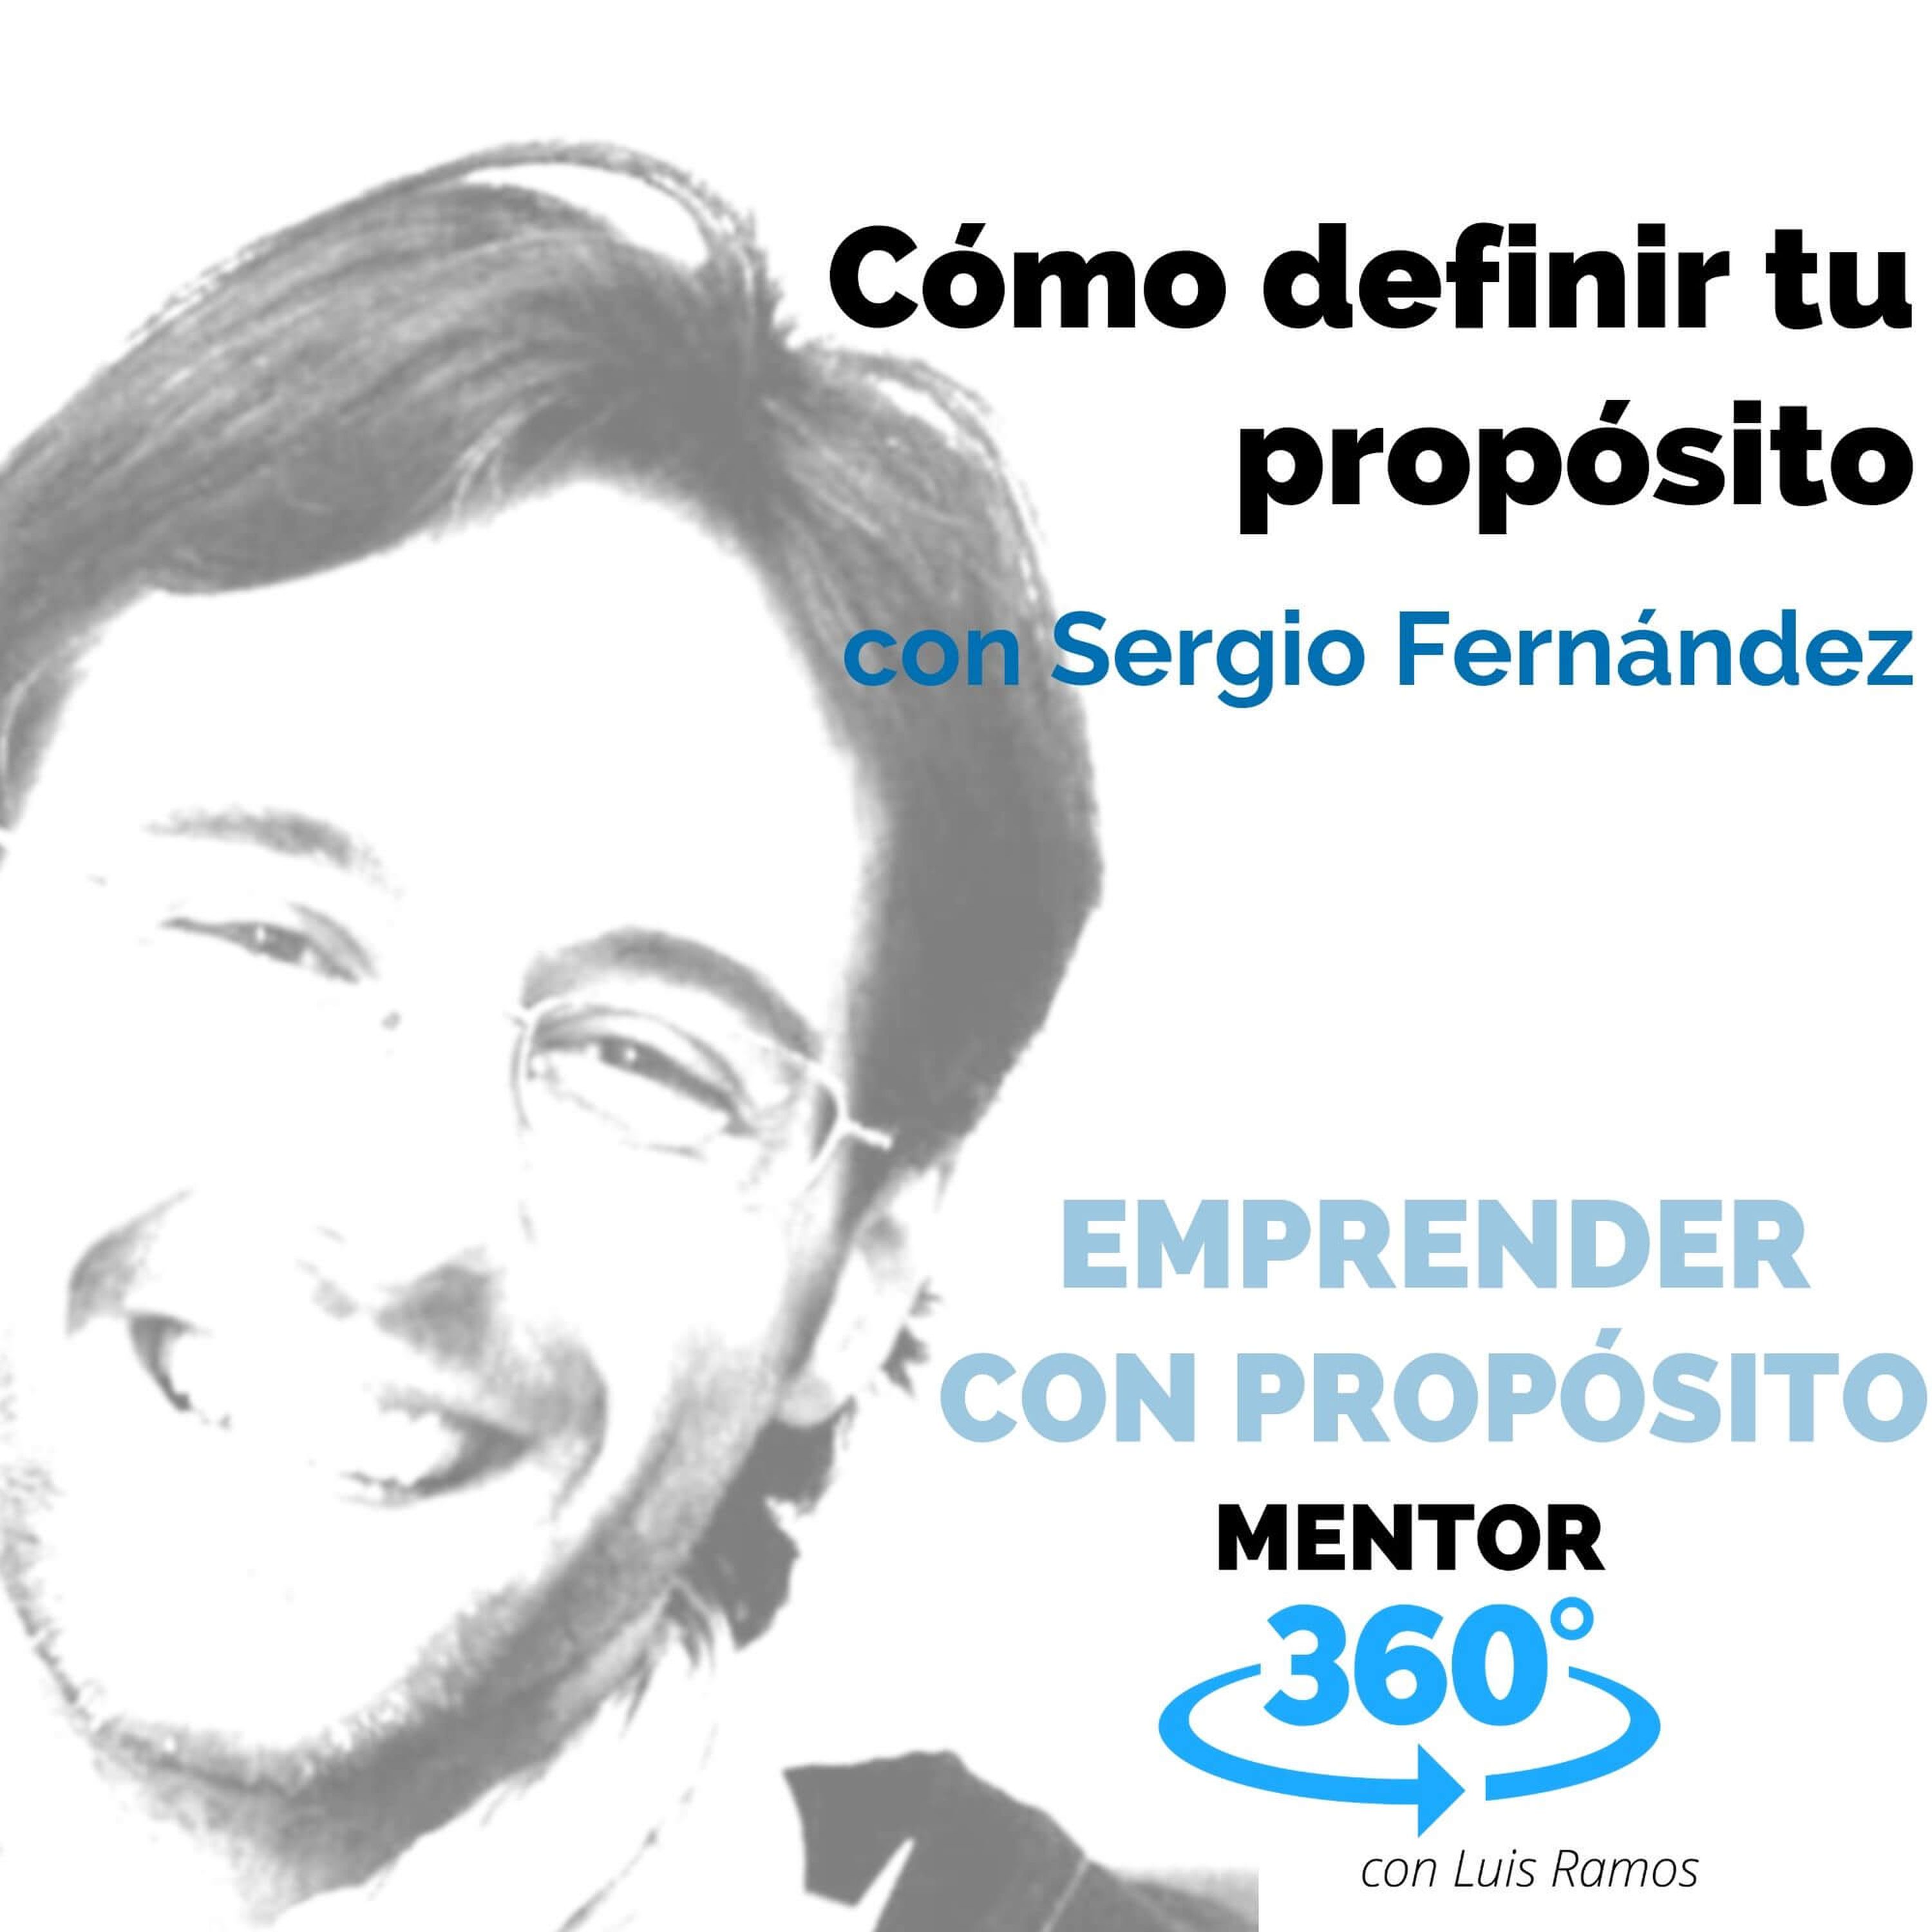 Cómo definir tu propósito, con Sergio Fernández - EMPRENDER CON PROPÓSITO - MENTOR360